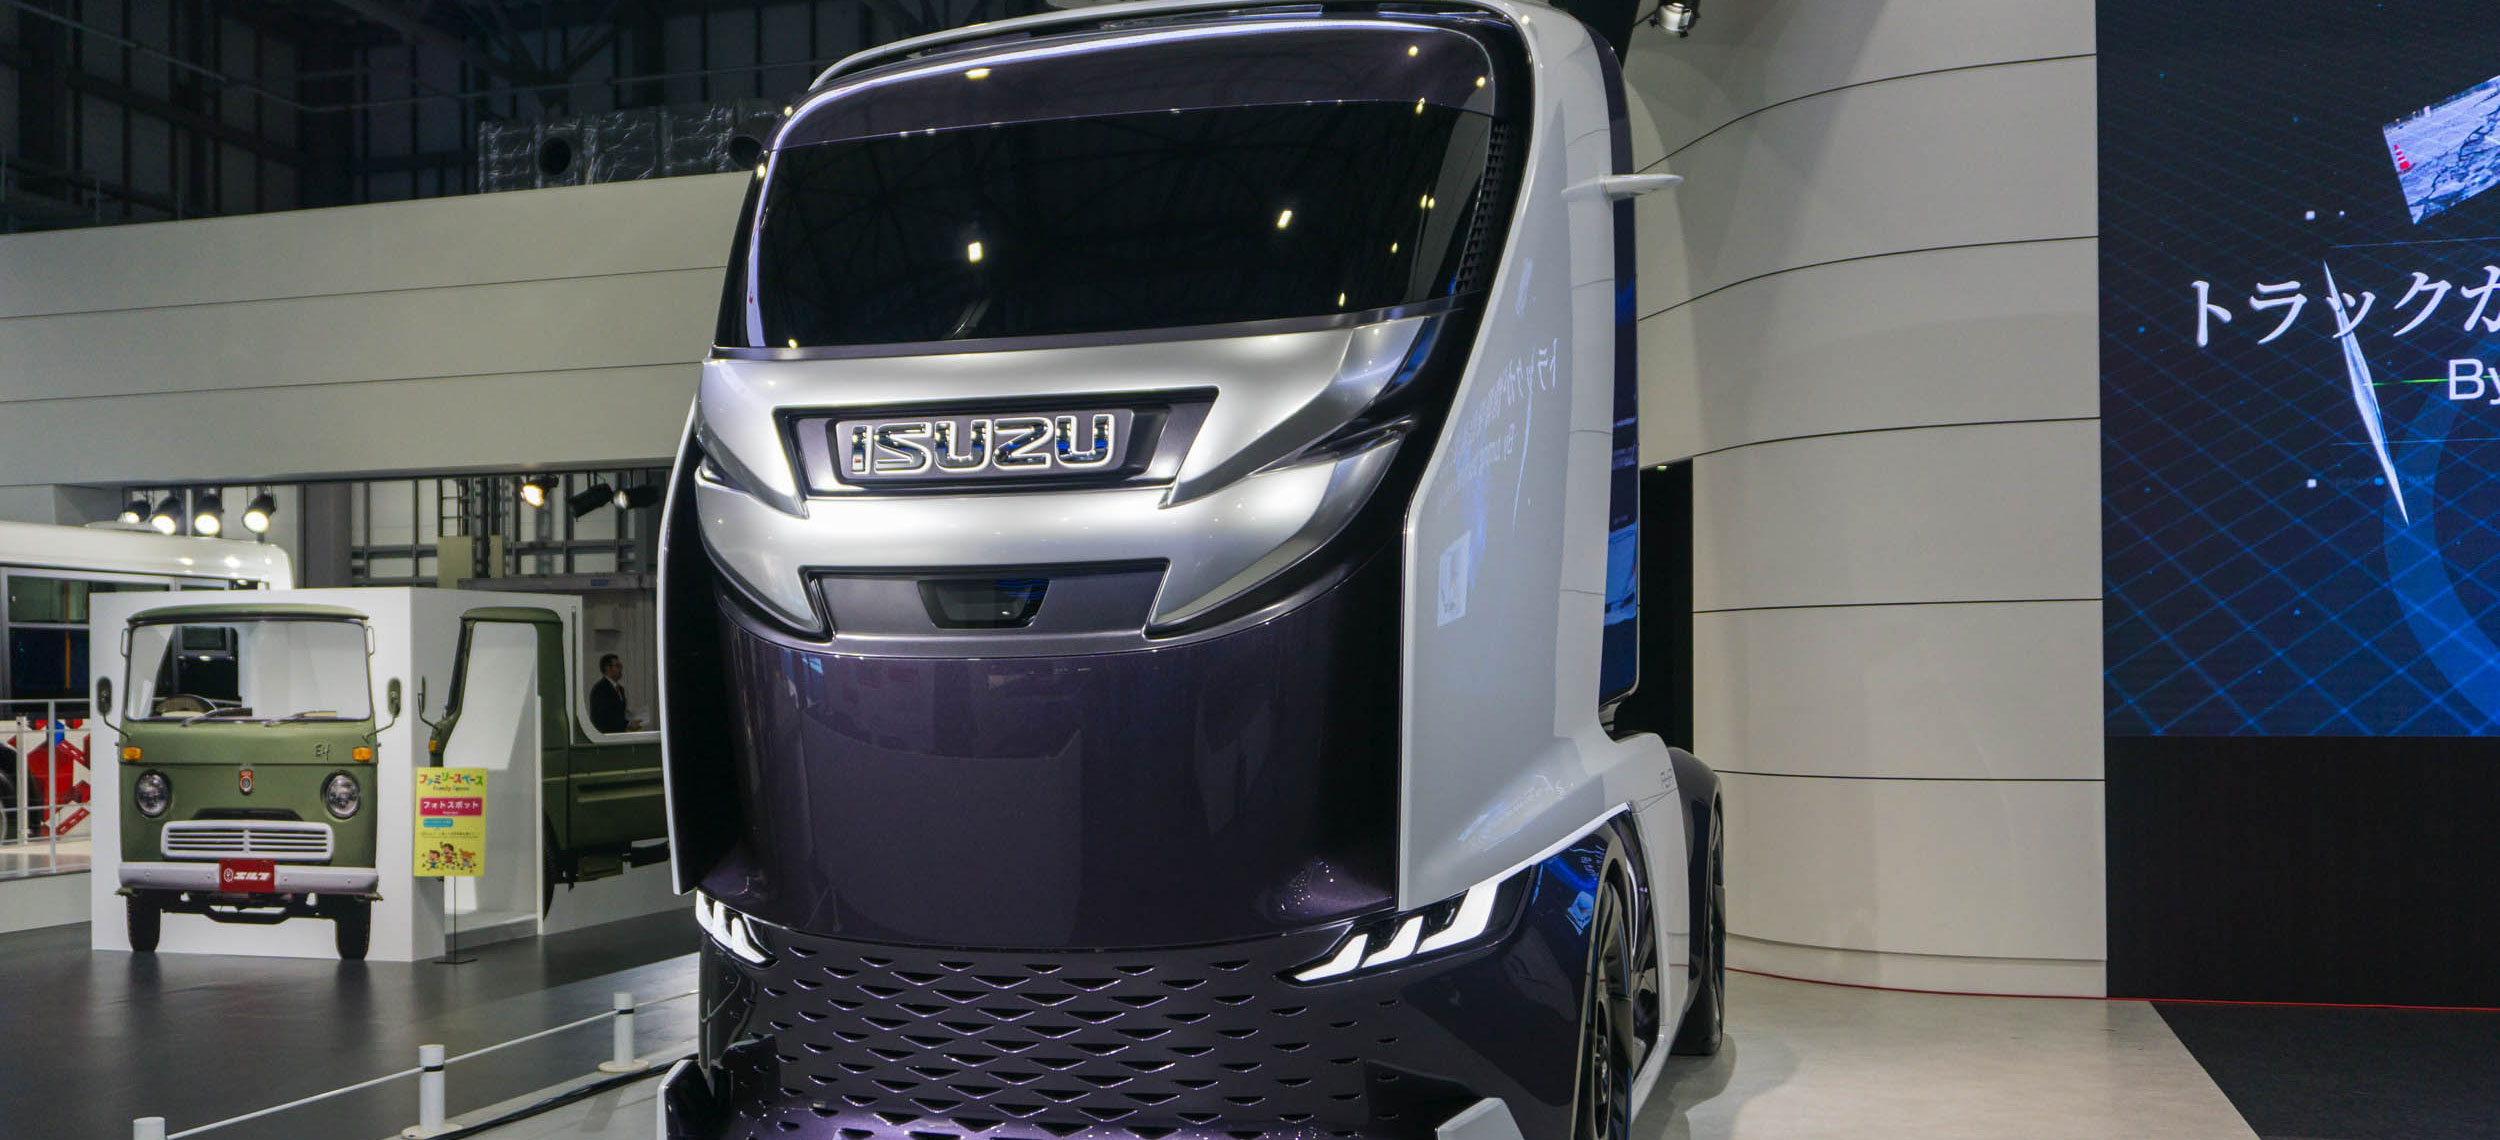 Camiones de conducción autónoma Isuzu